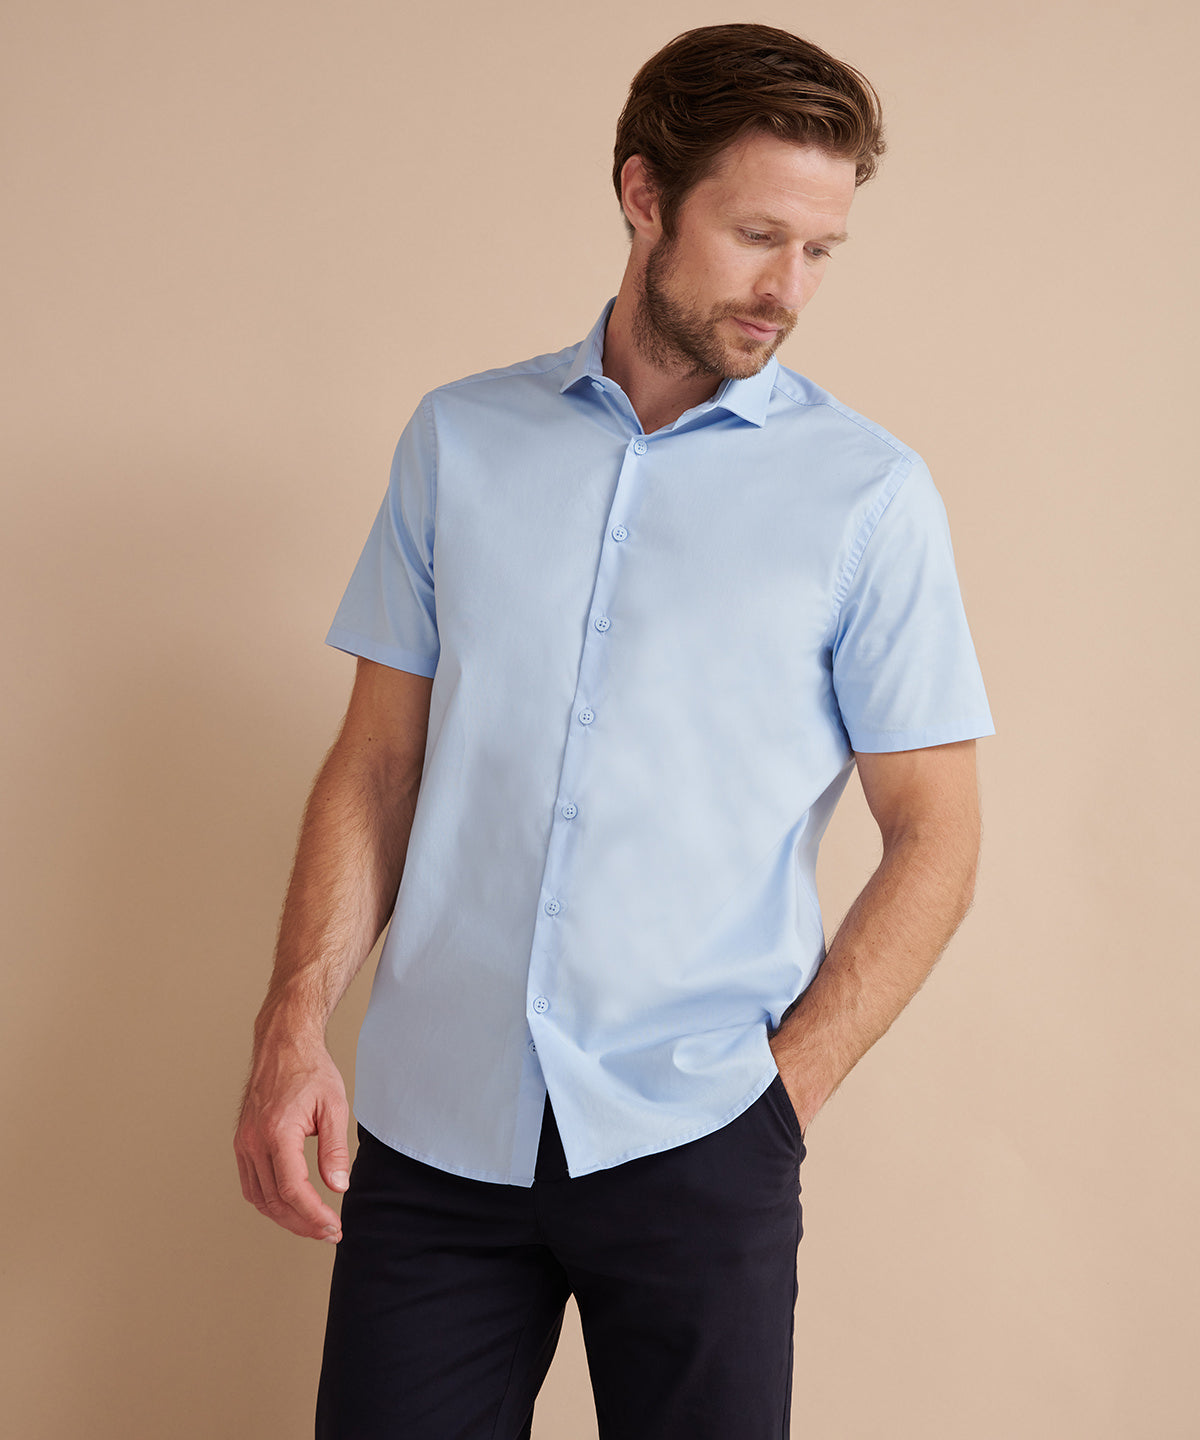 Bolir - Short Sleeve Stretch Shirt